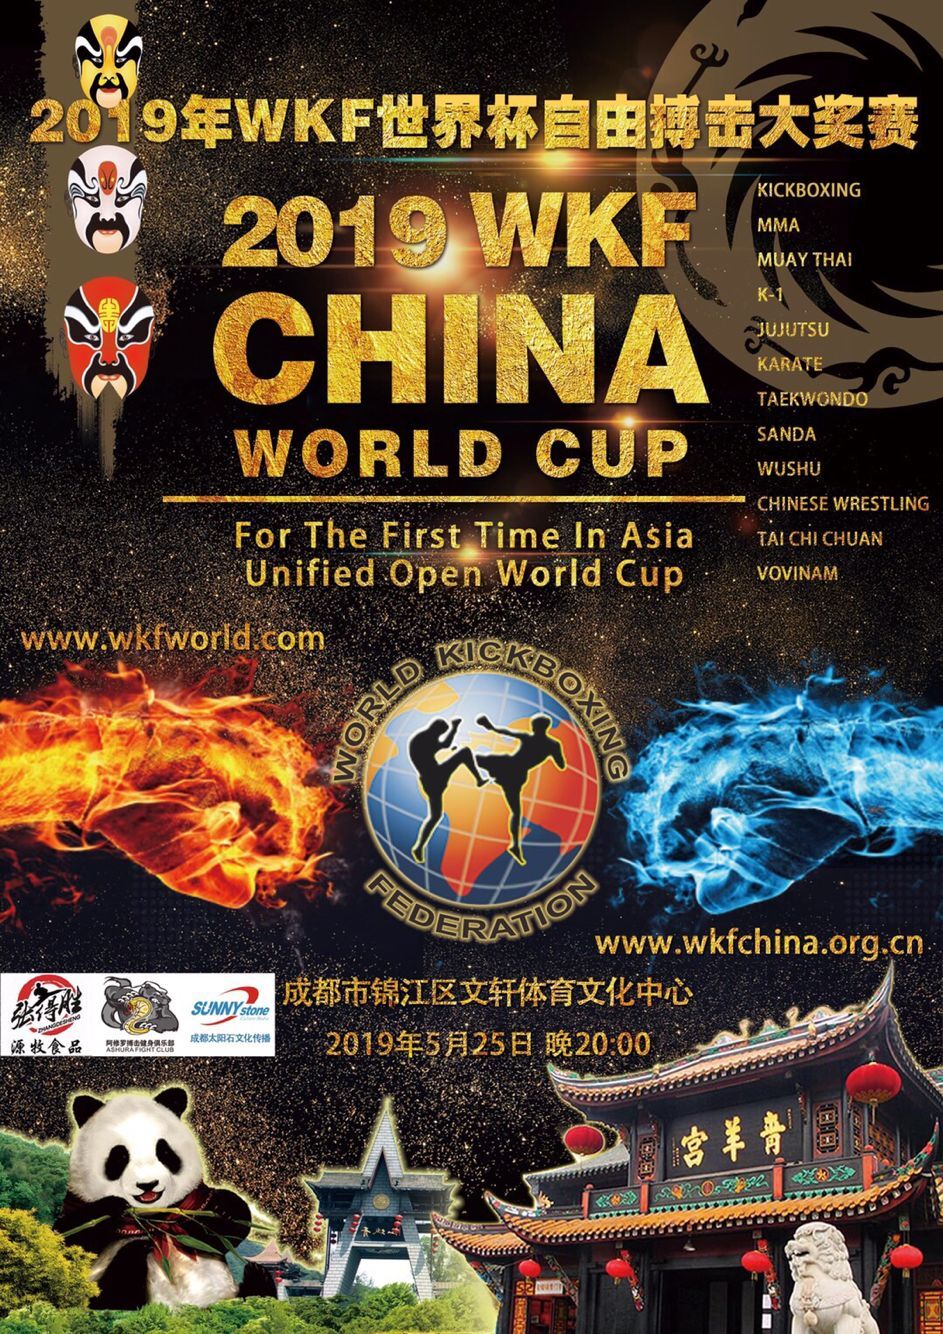 2019年WKF世界杯自由搏击大奖赛